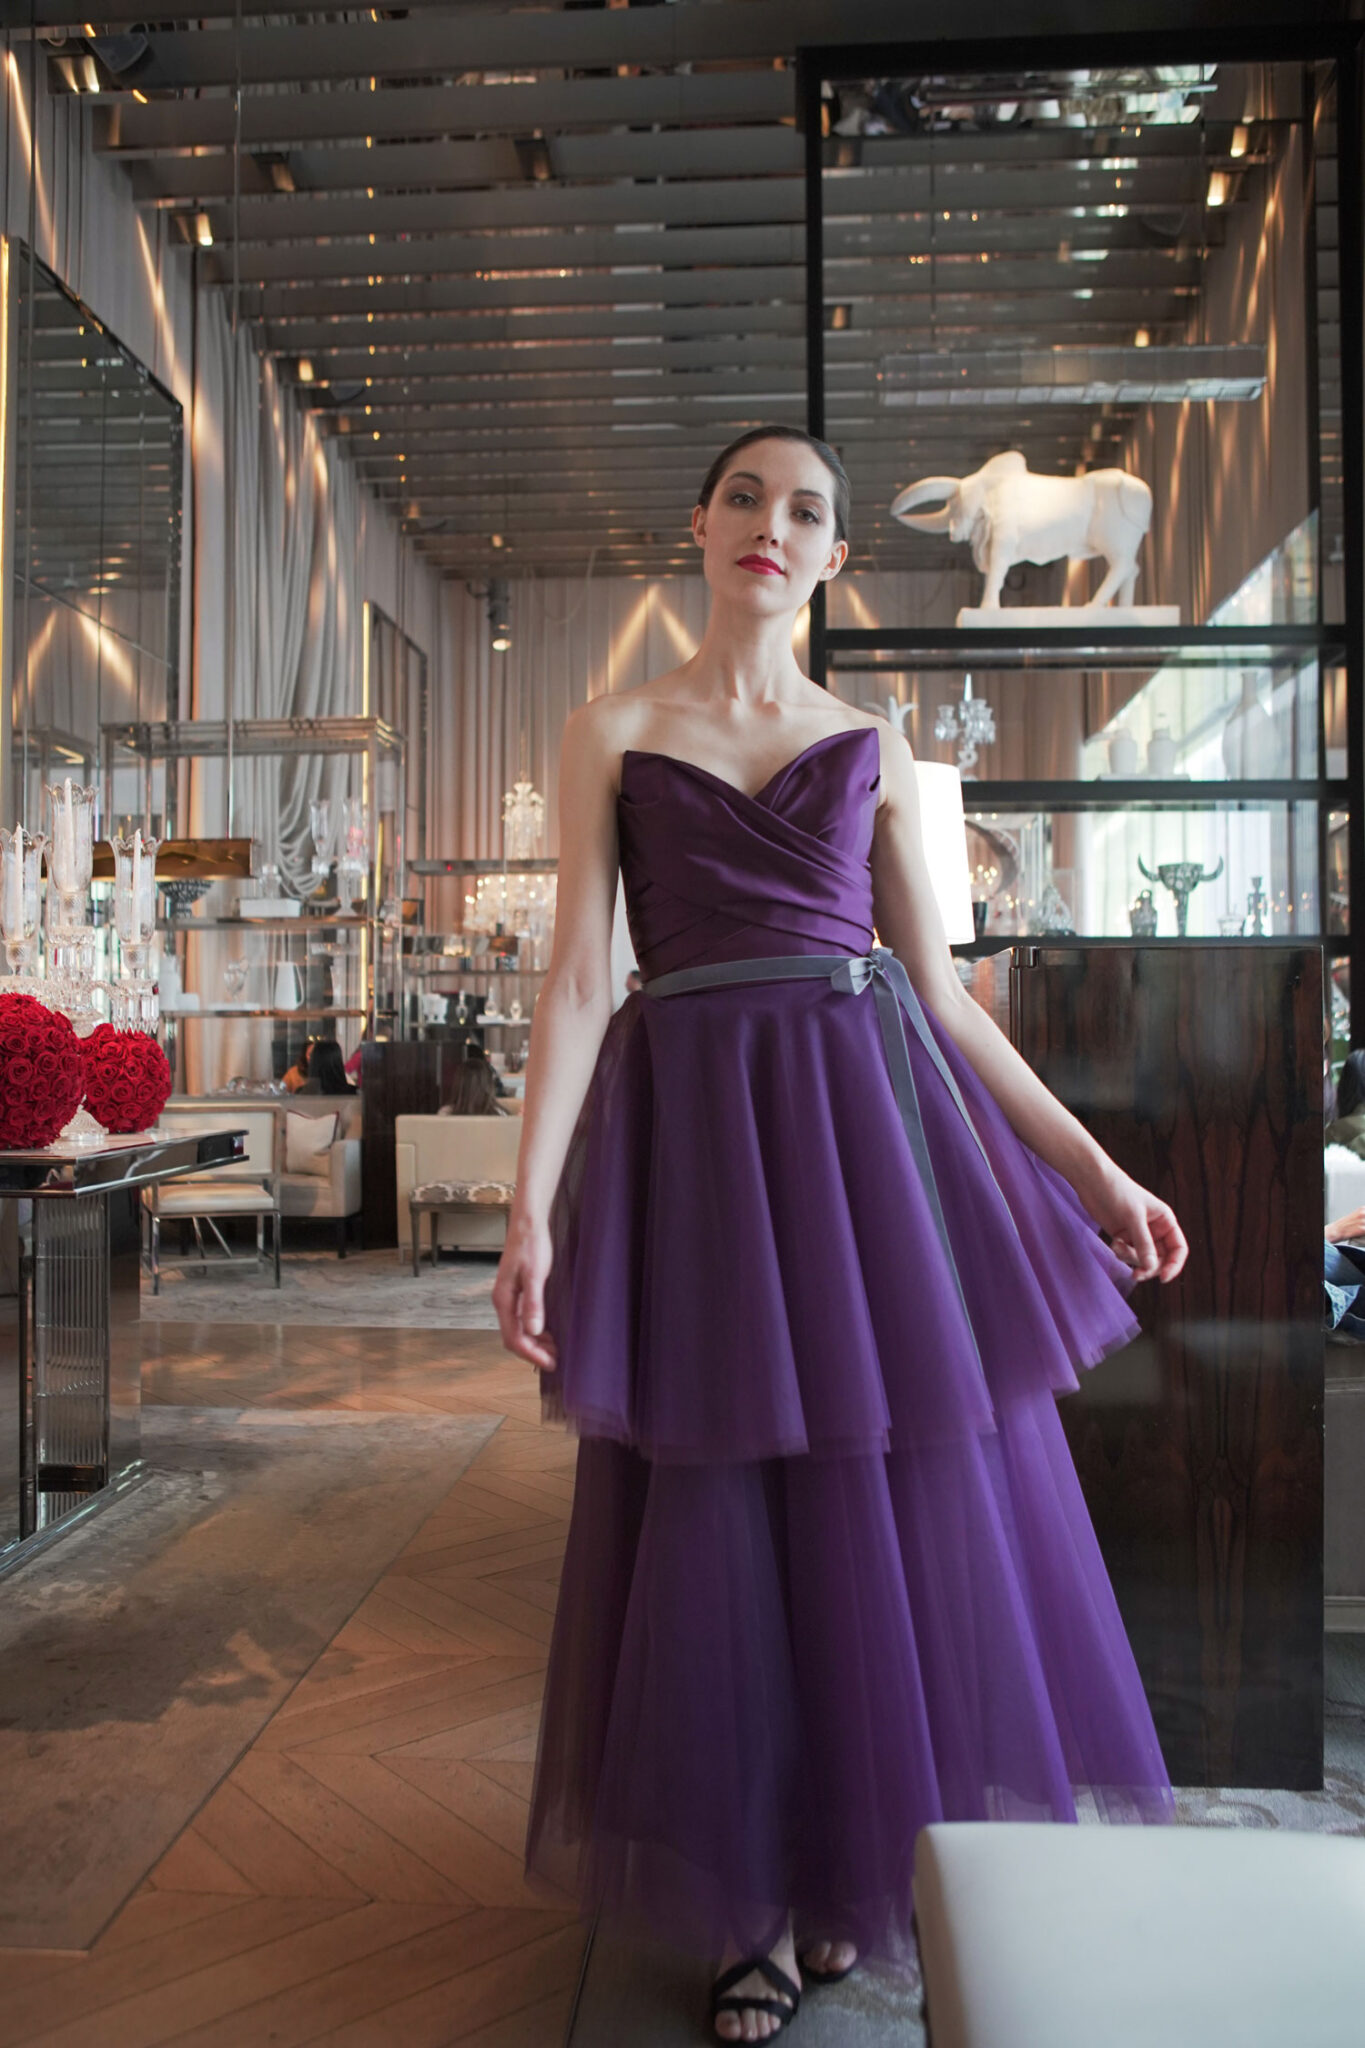 Fairytale Look 10 - Simple and elegant purple dress - Verdin New York